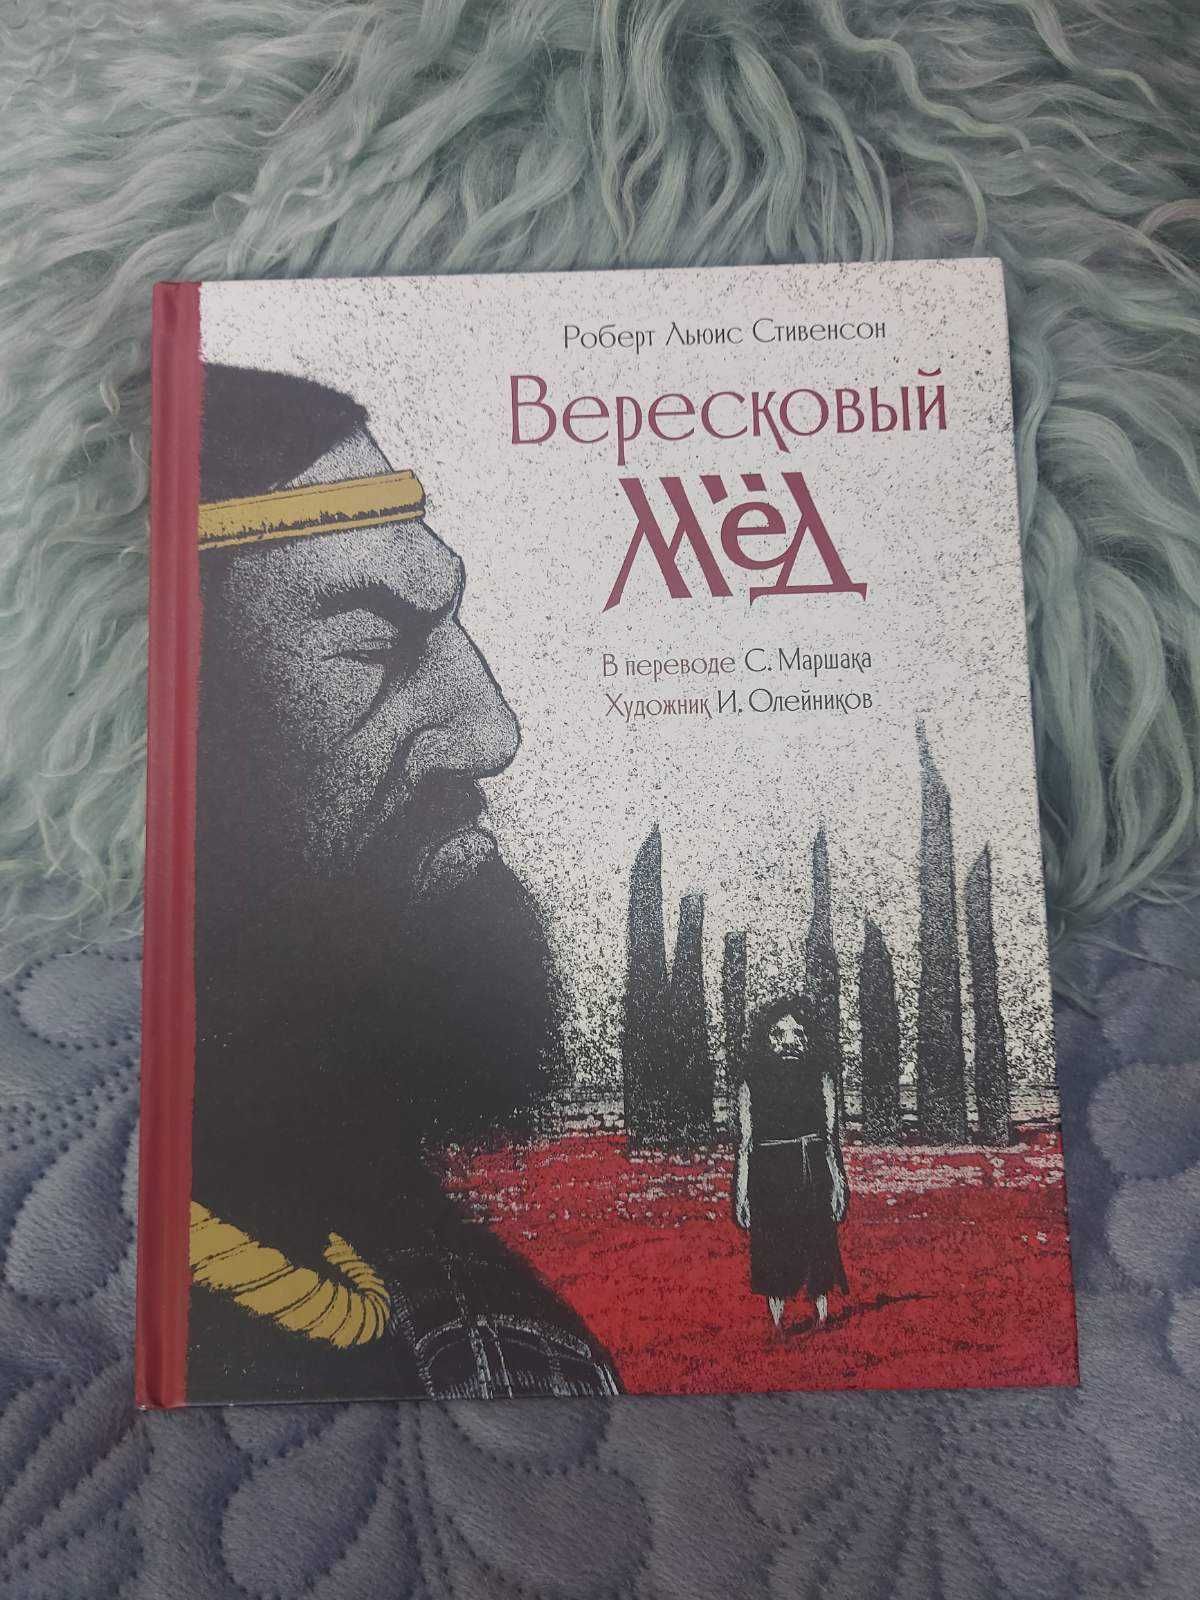 Коллекция книг Олейникова